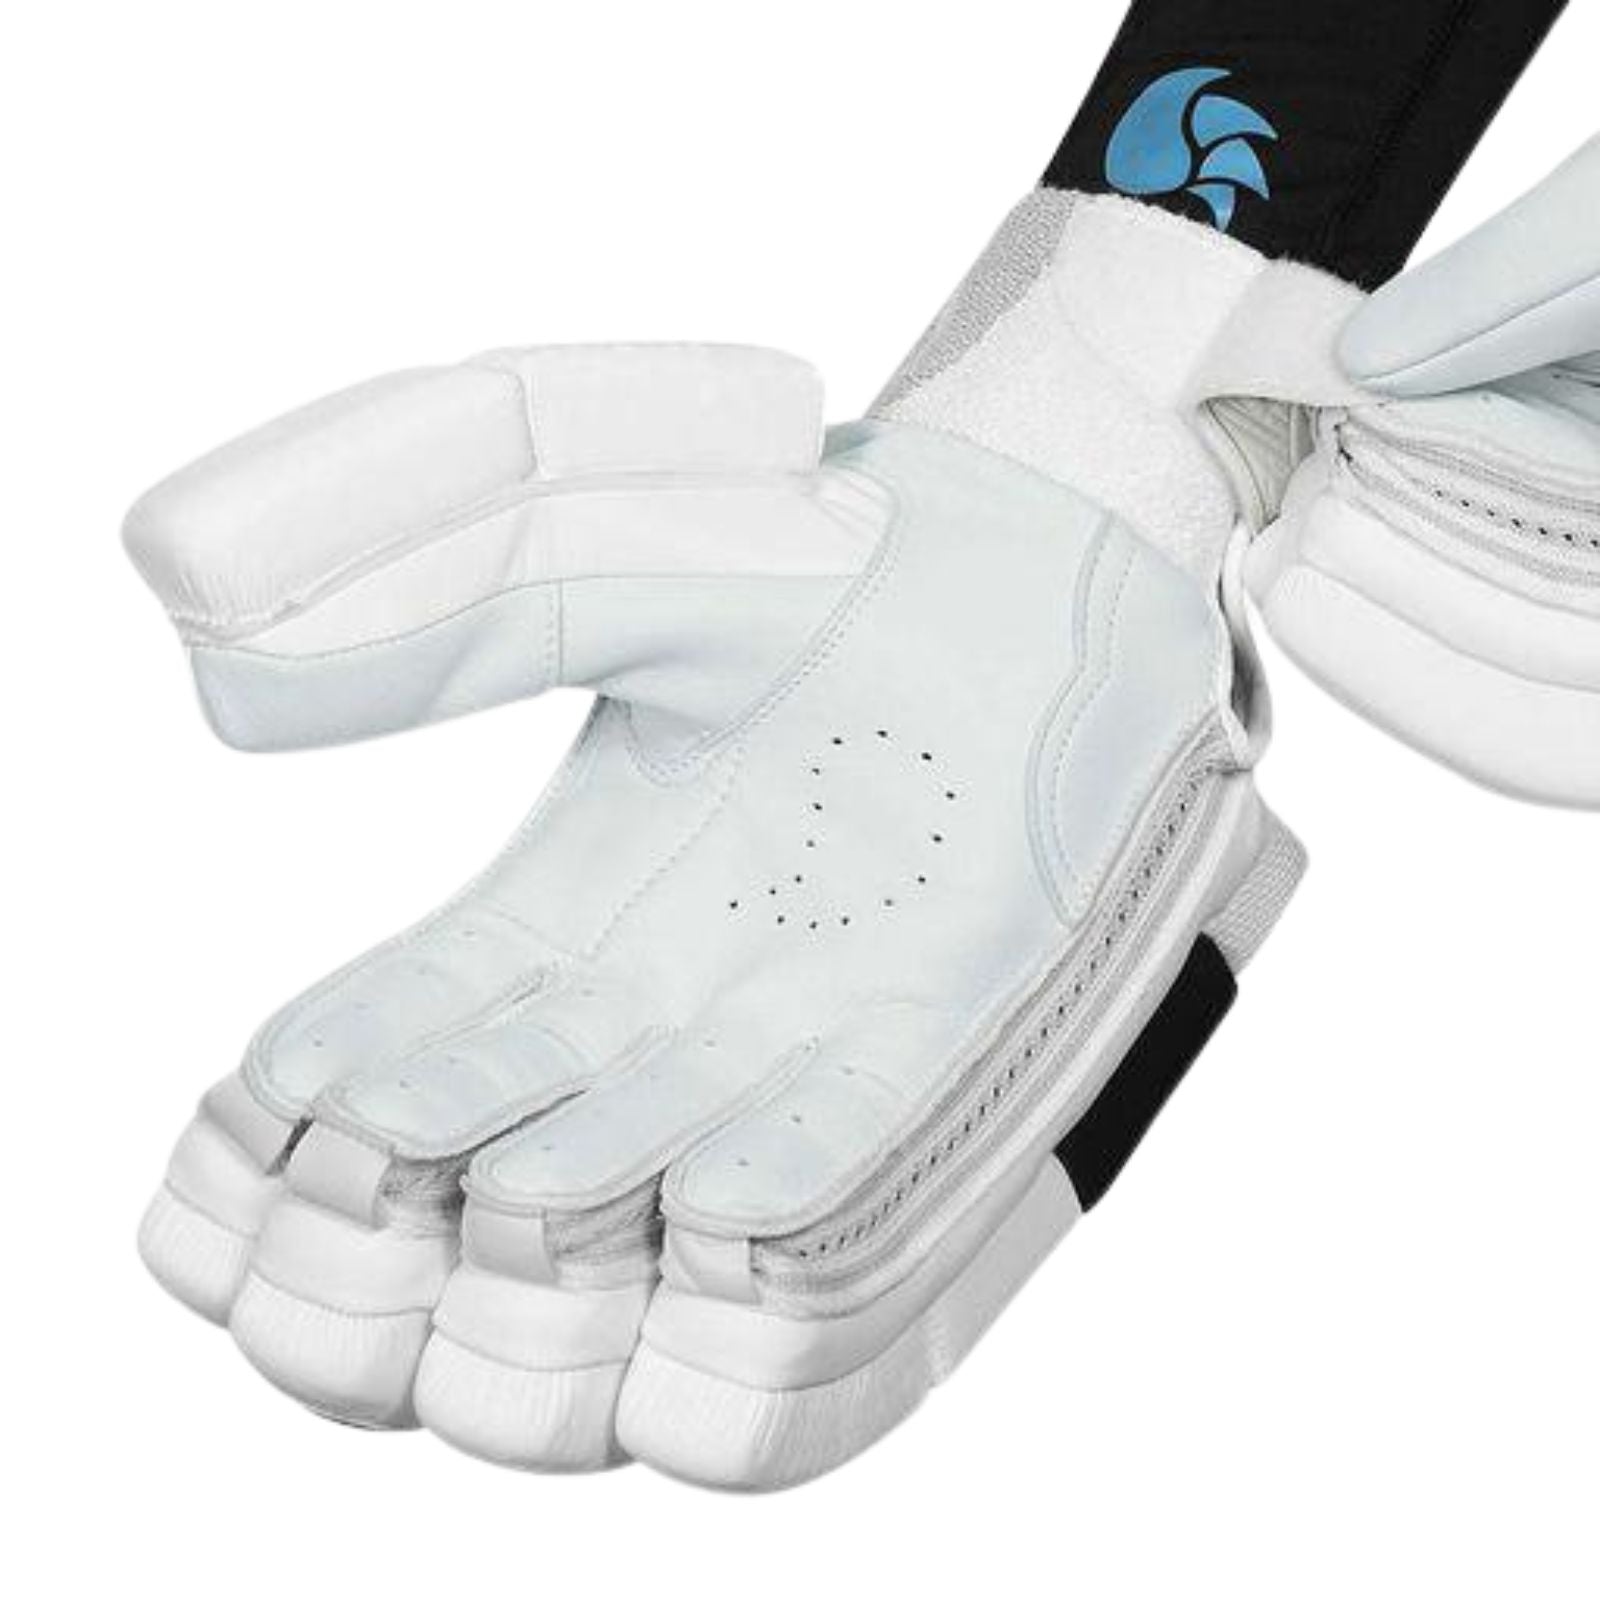 DSC Krunch 500 Batting Gloves - Senior